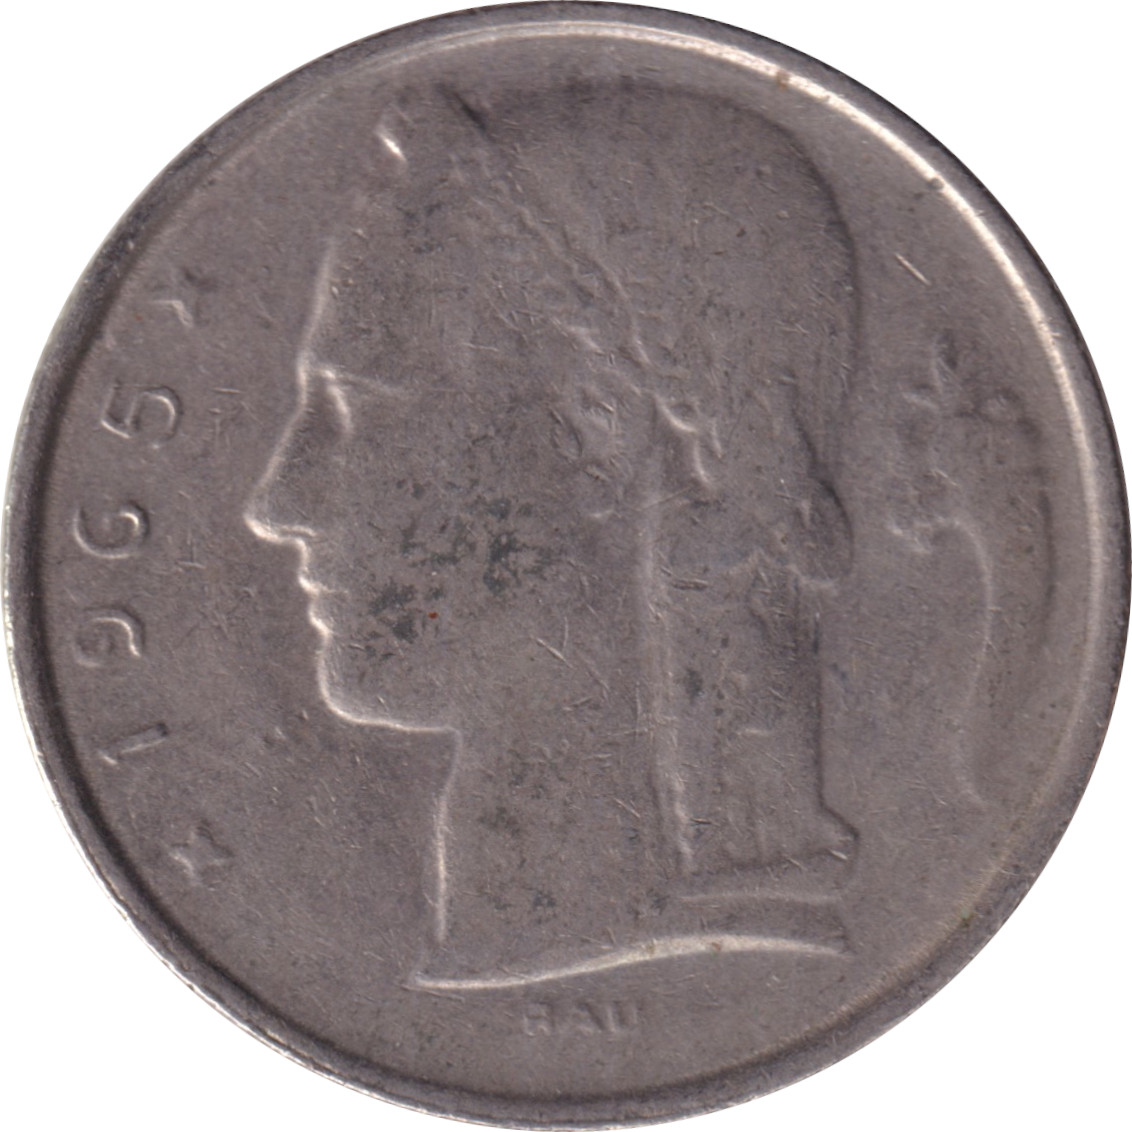 5 francs - Cérès